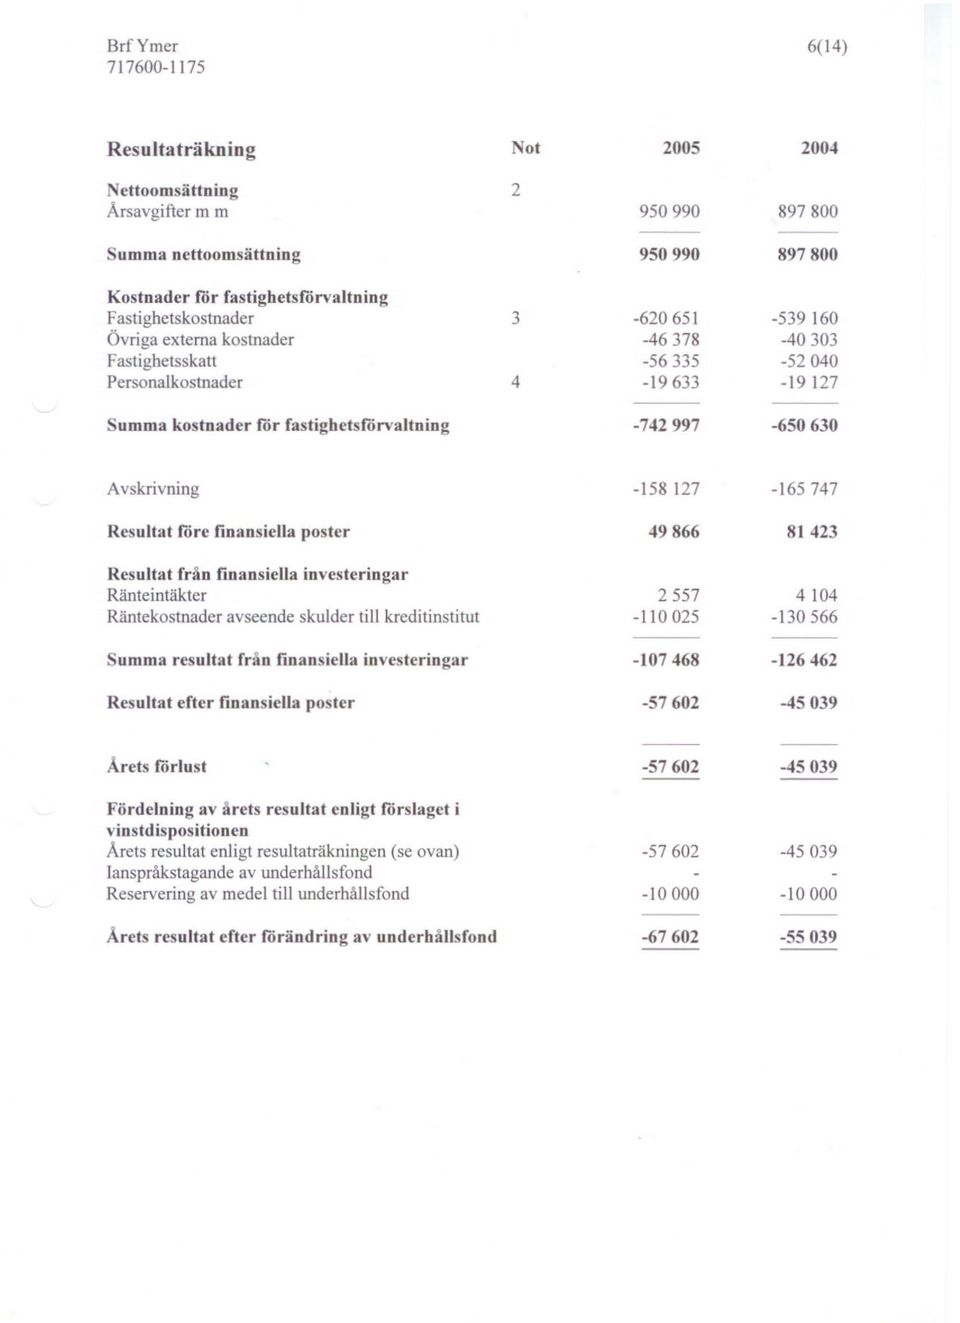 finansiella poster 49866 81423 Resultat från finansiella investeringar Ränteintäkter 2557 4104 Räntekostnader avseende skulder till kreditinstitut -110 025-130566 umma resultat från finansiella